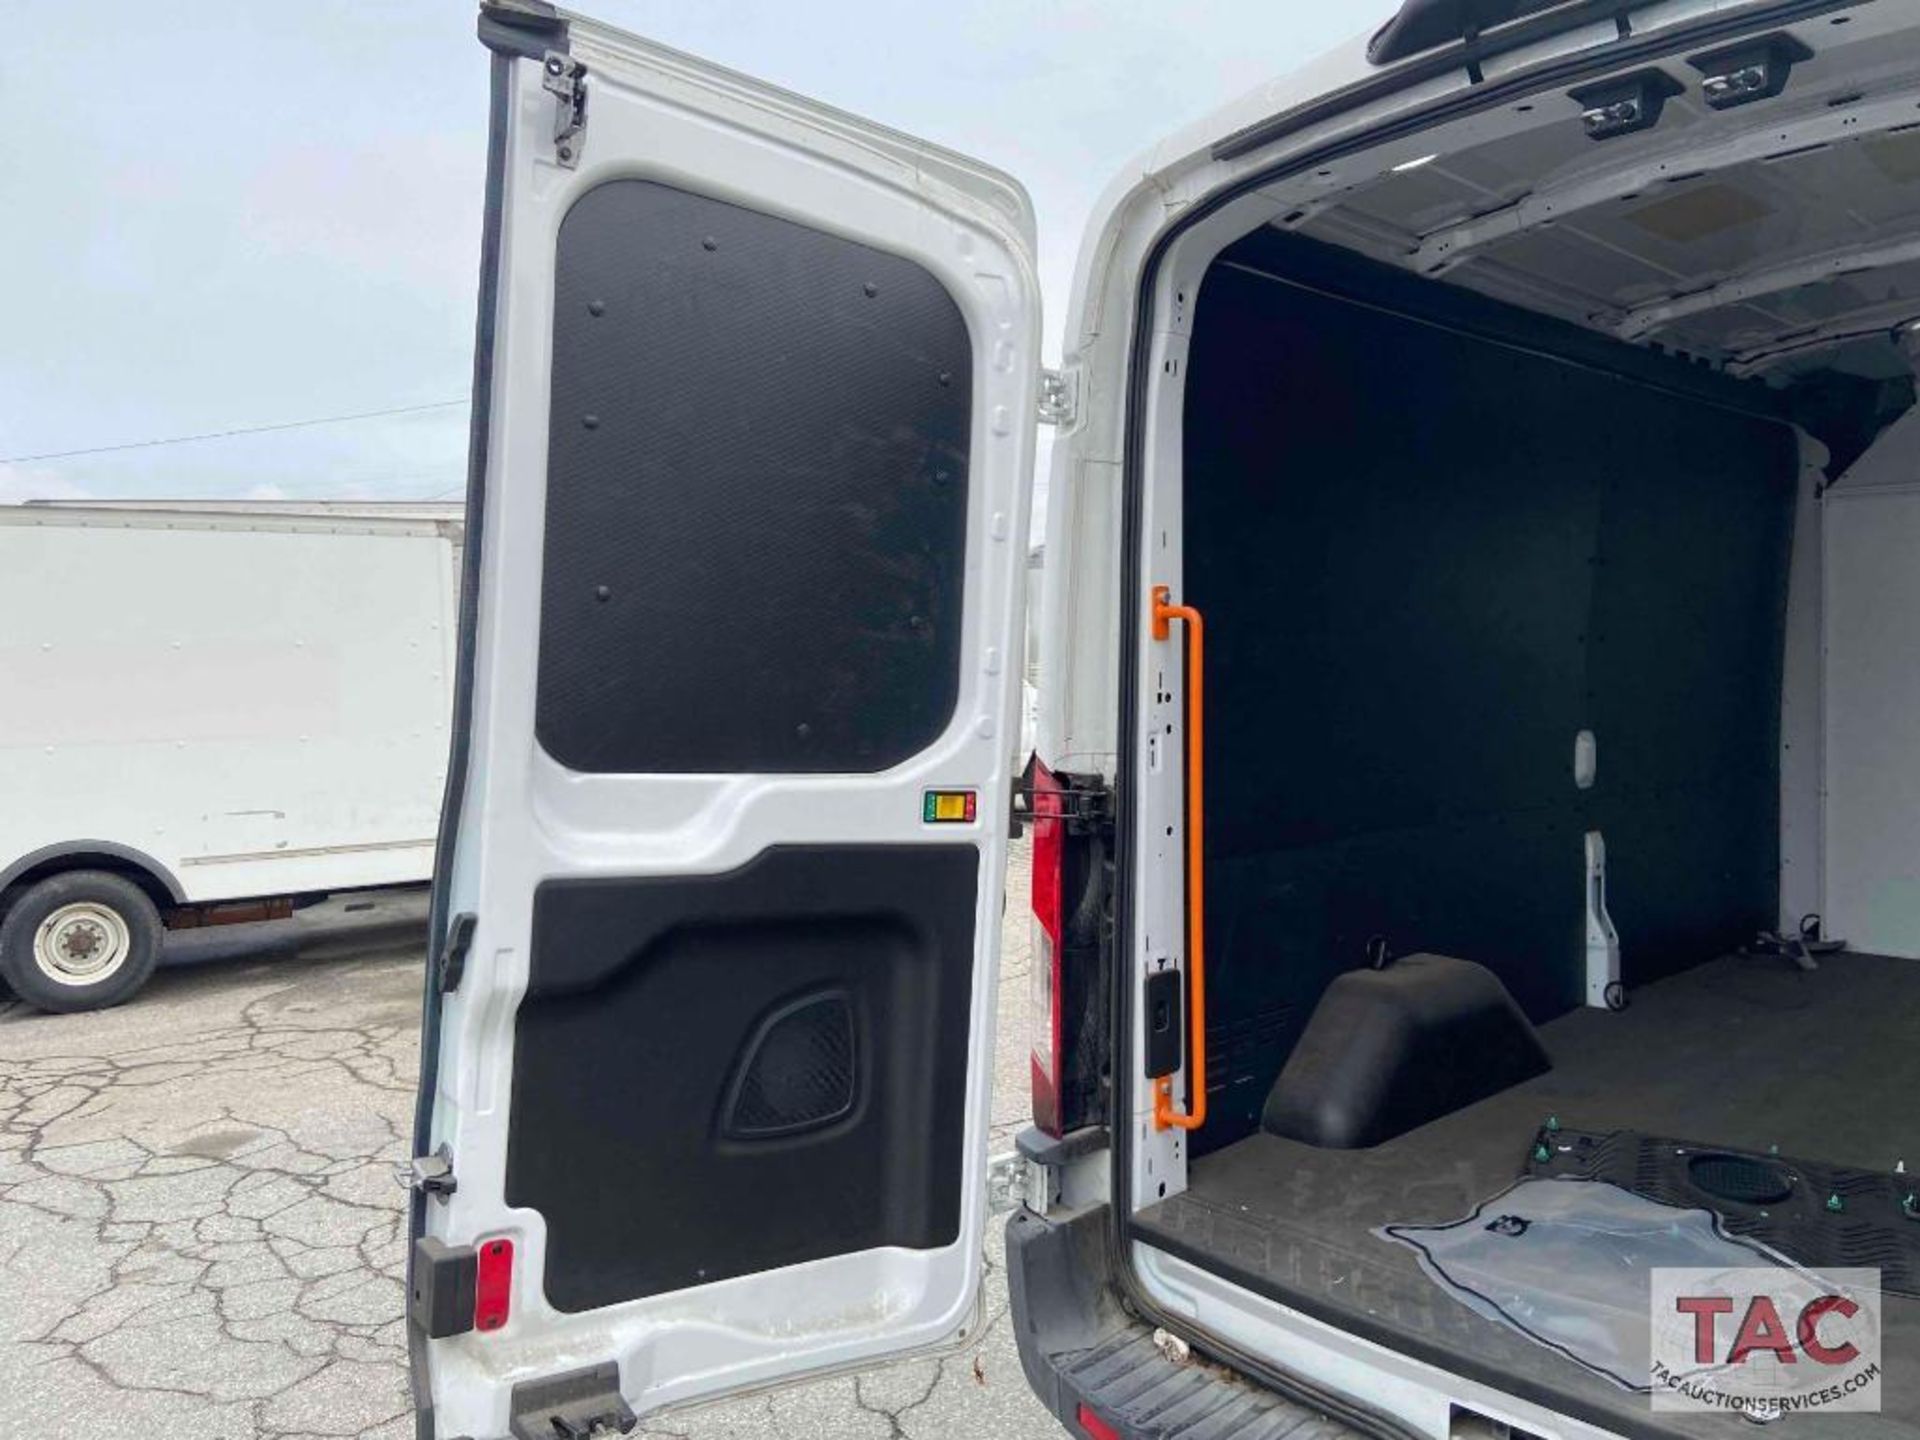 2019 Ford Transit 150 Cargo Van - Image 12 of 90